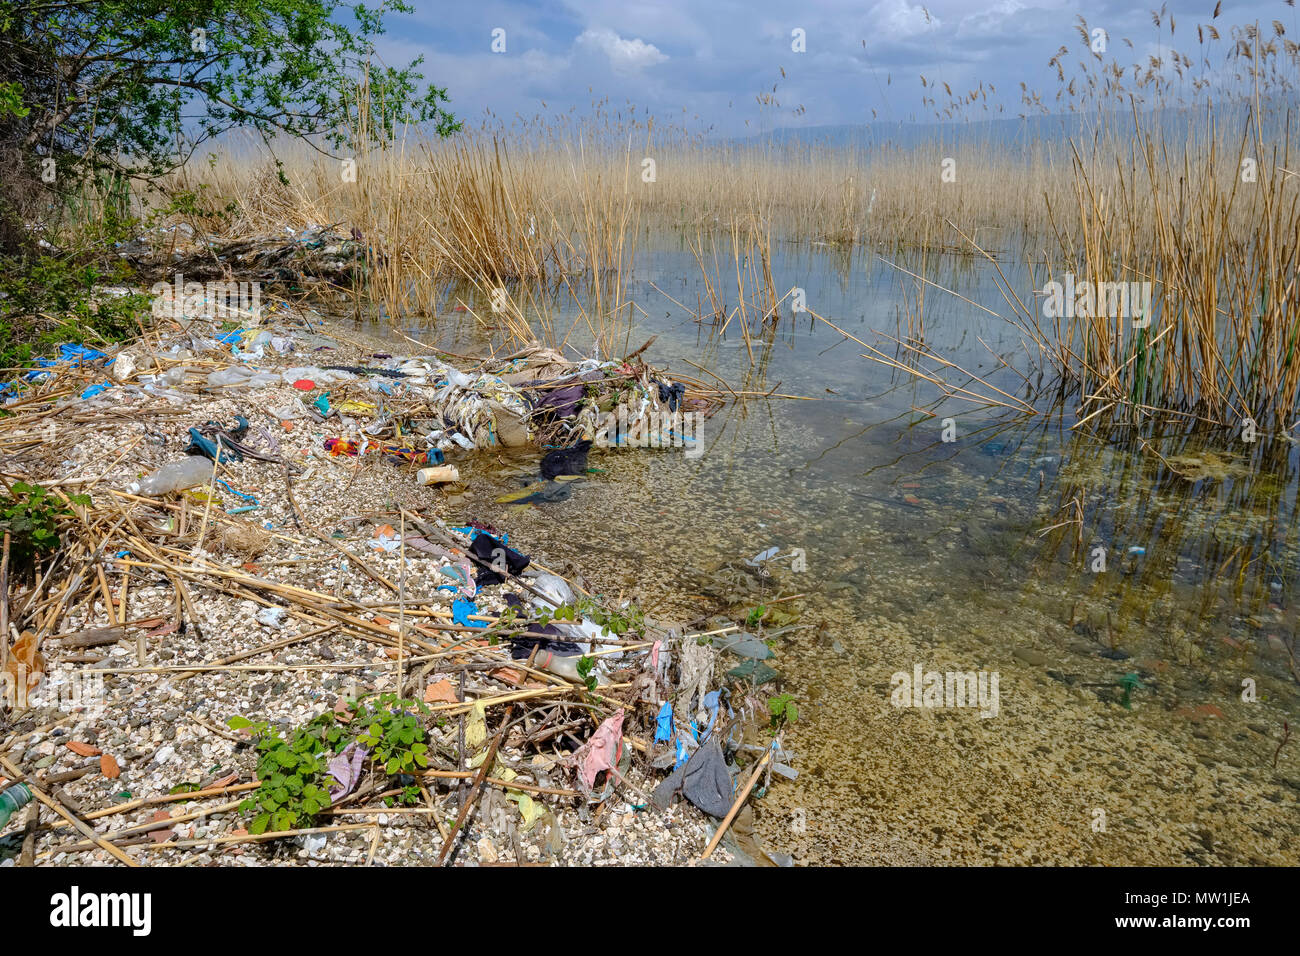 Lavé des déchets jusqu'au bord du lac, le lac d'Ohrid près de Udenisht, région, l'Albanie Korca Banque D'Images